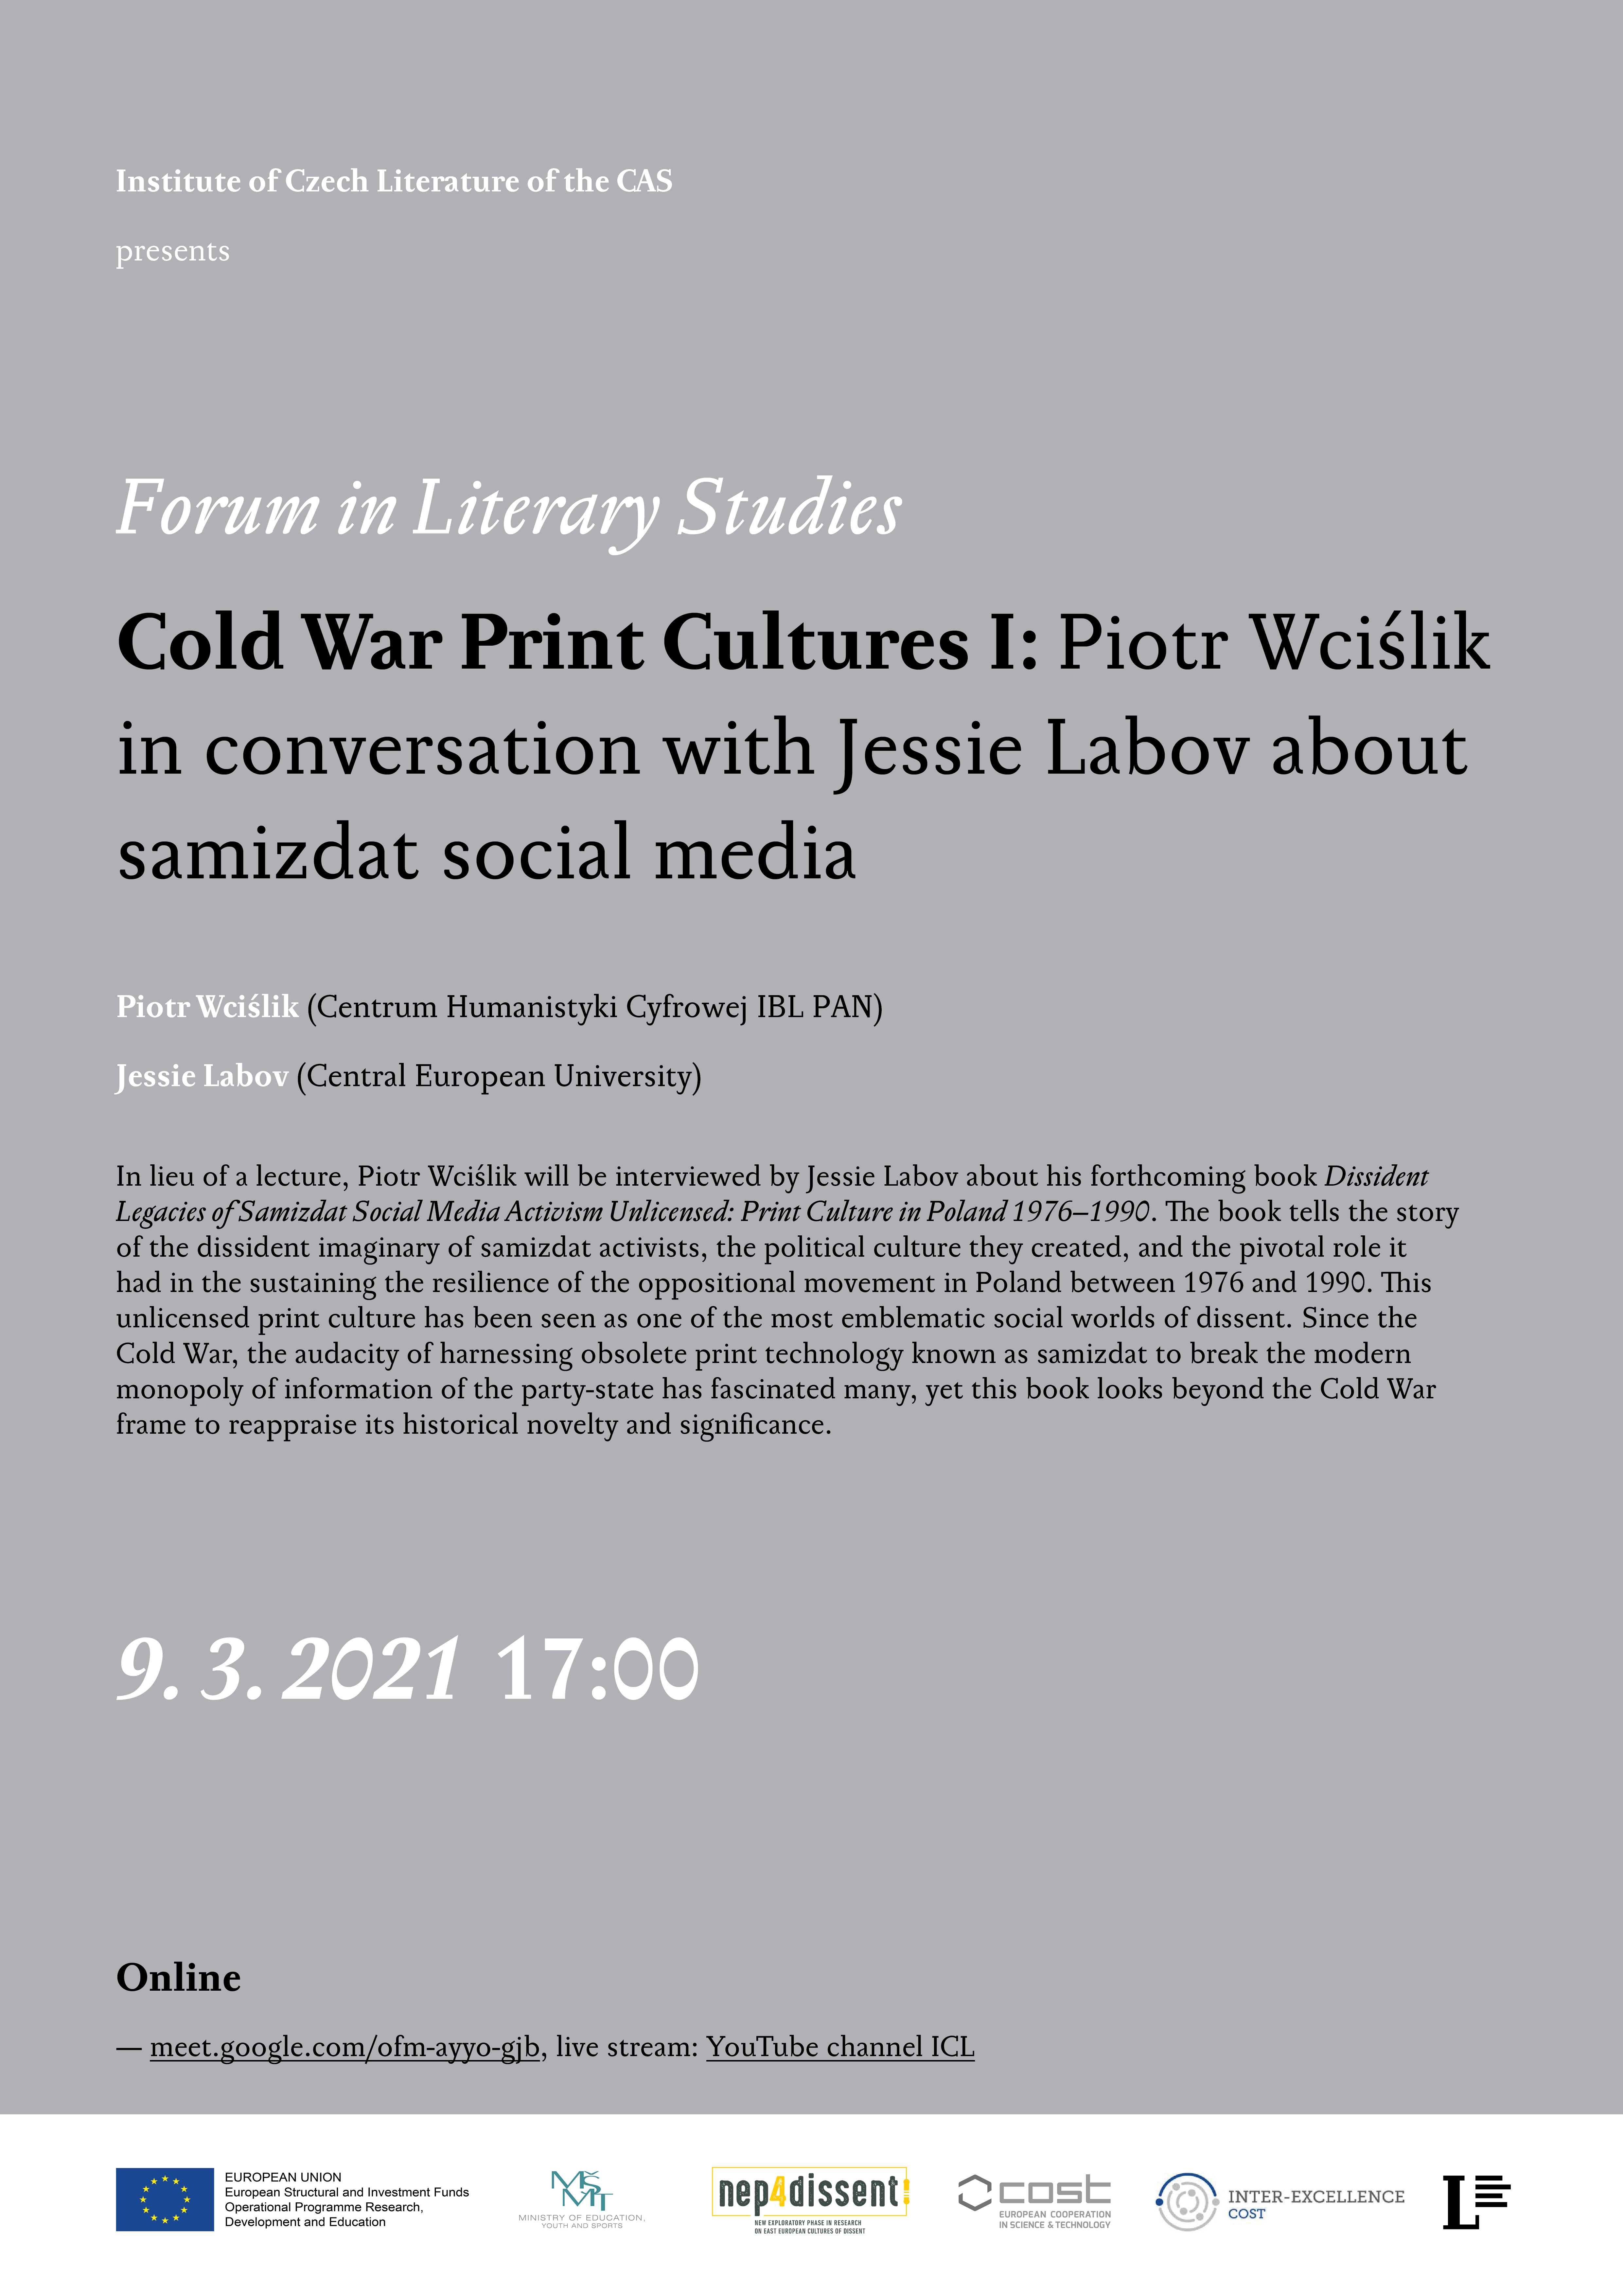 LVF 2021: Cold War Print Cultures I